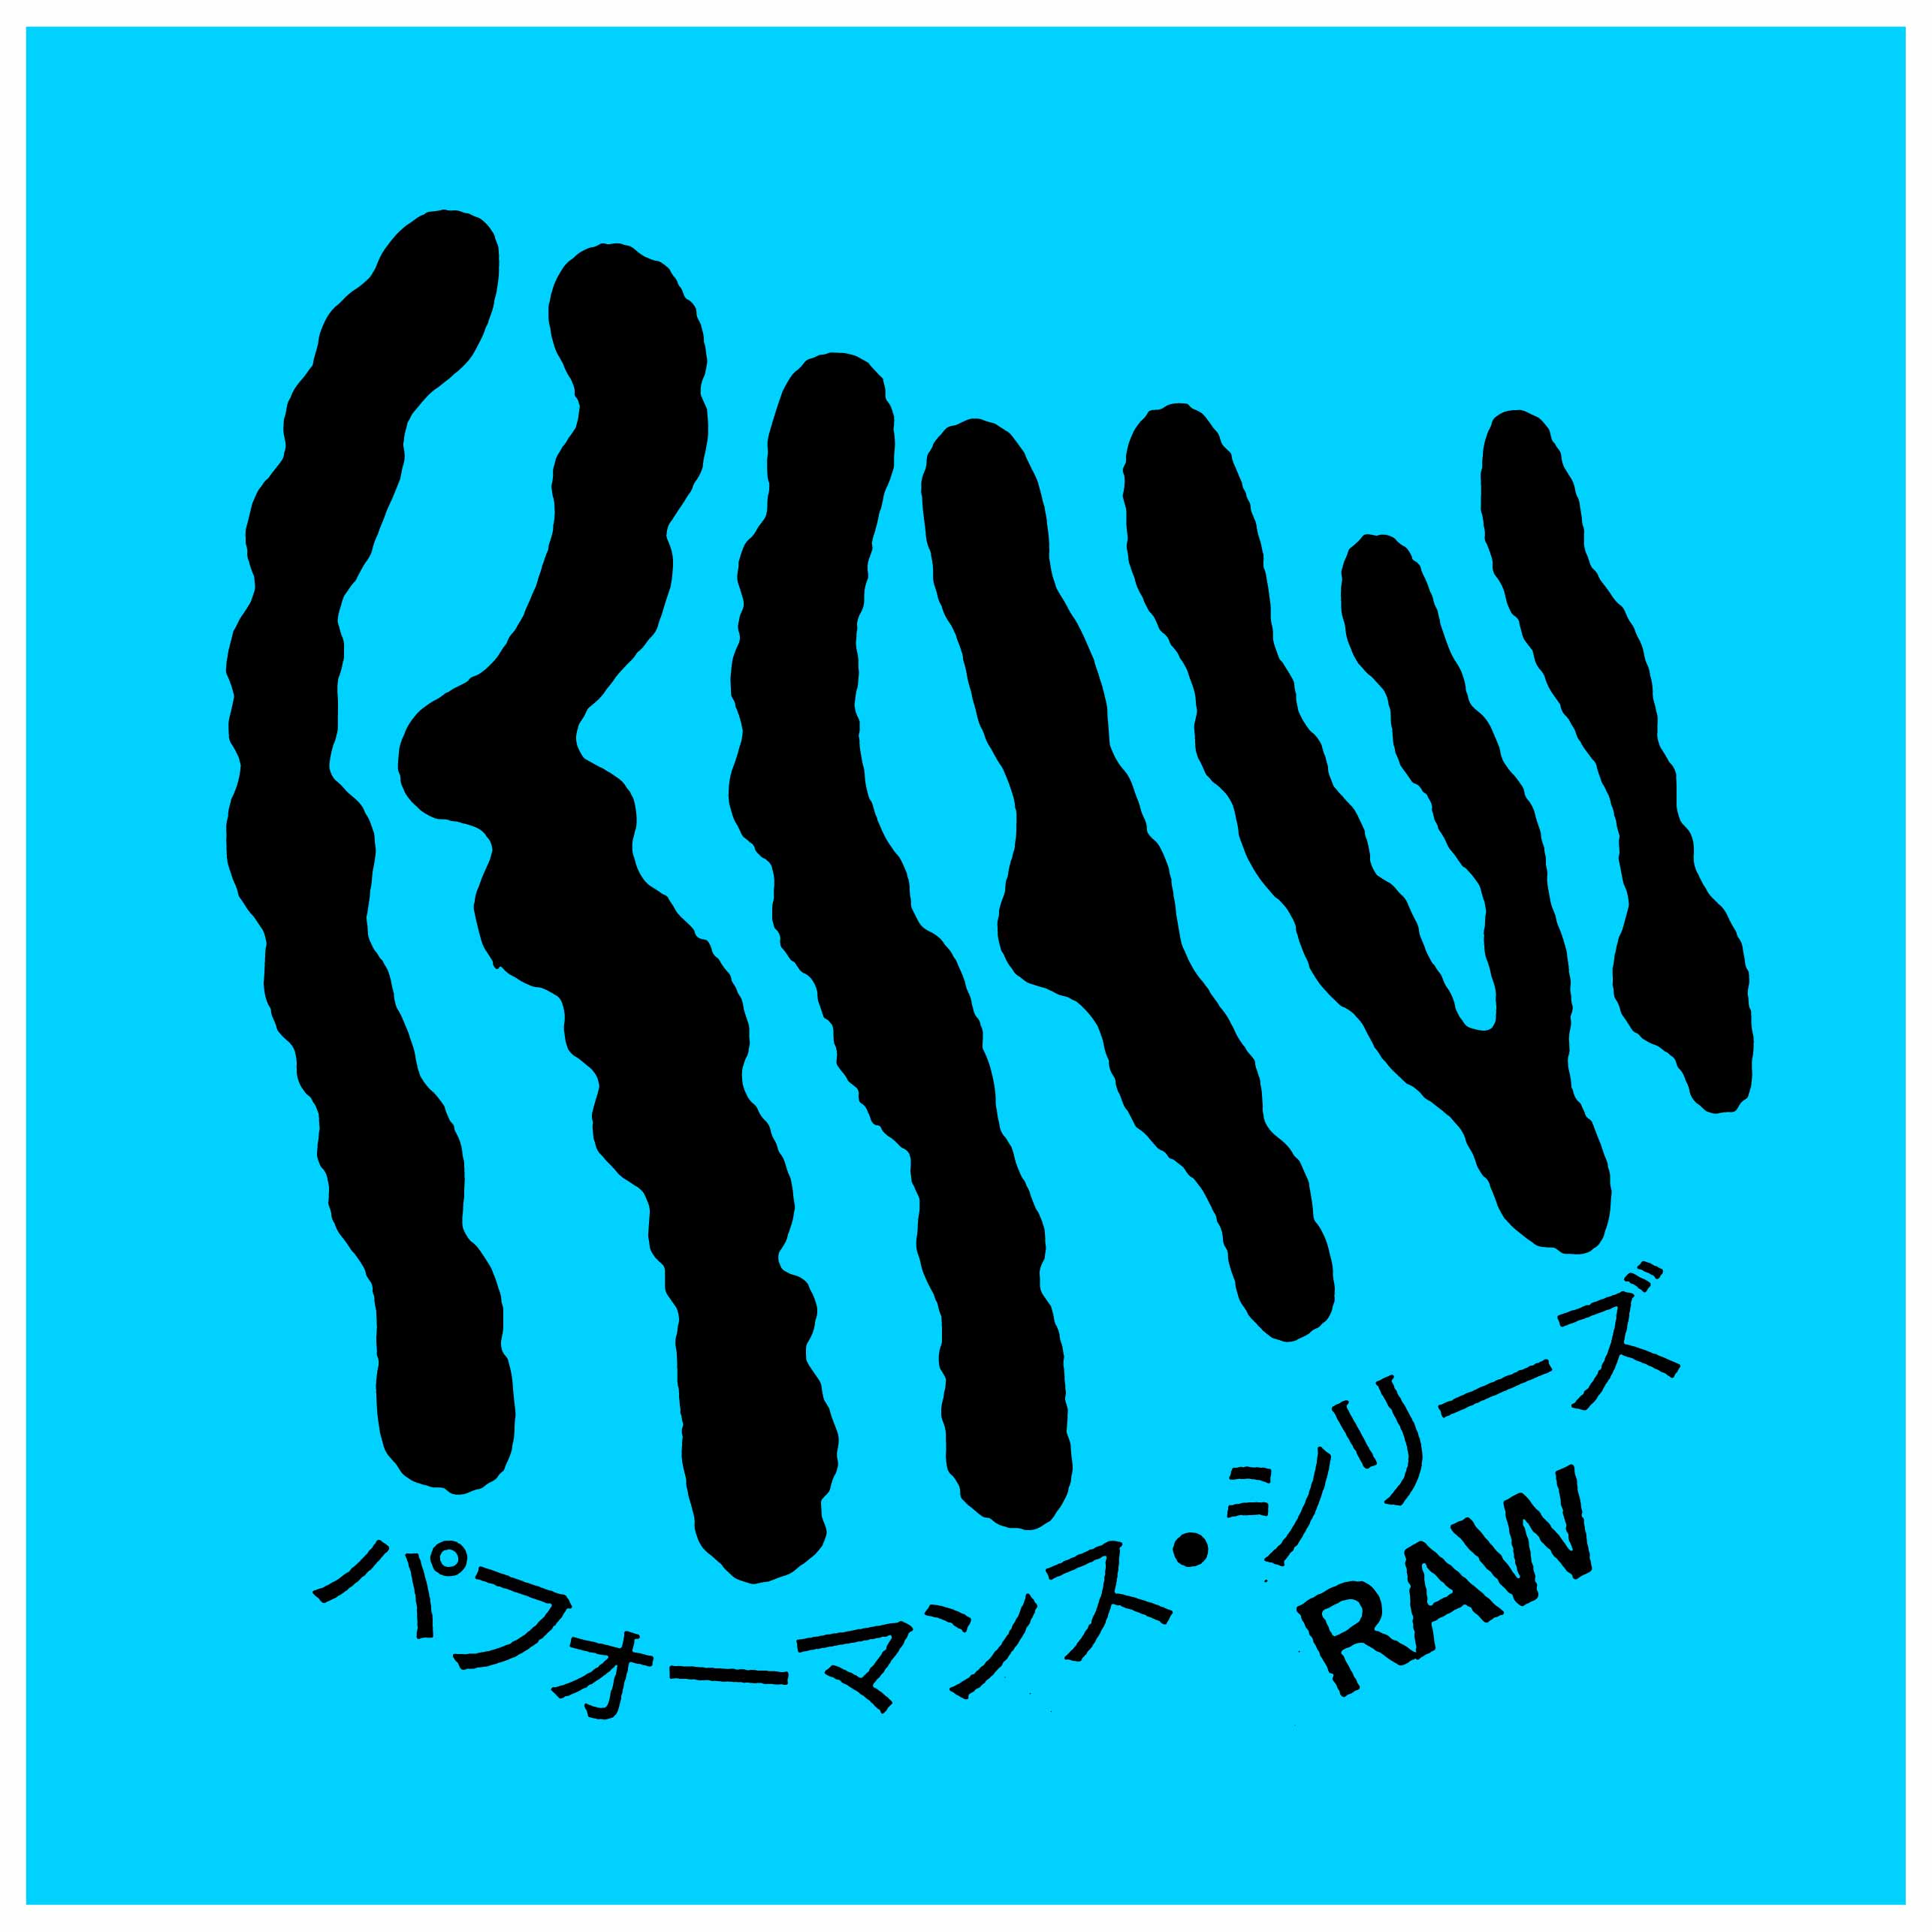 パフォーマンス・シリーズ「RAW」02<br>音遊びの会 × 山下残　最終ワークショップ